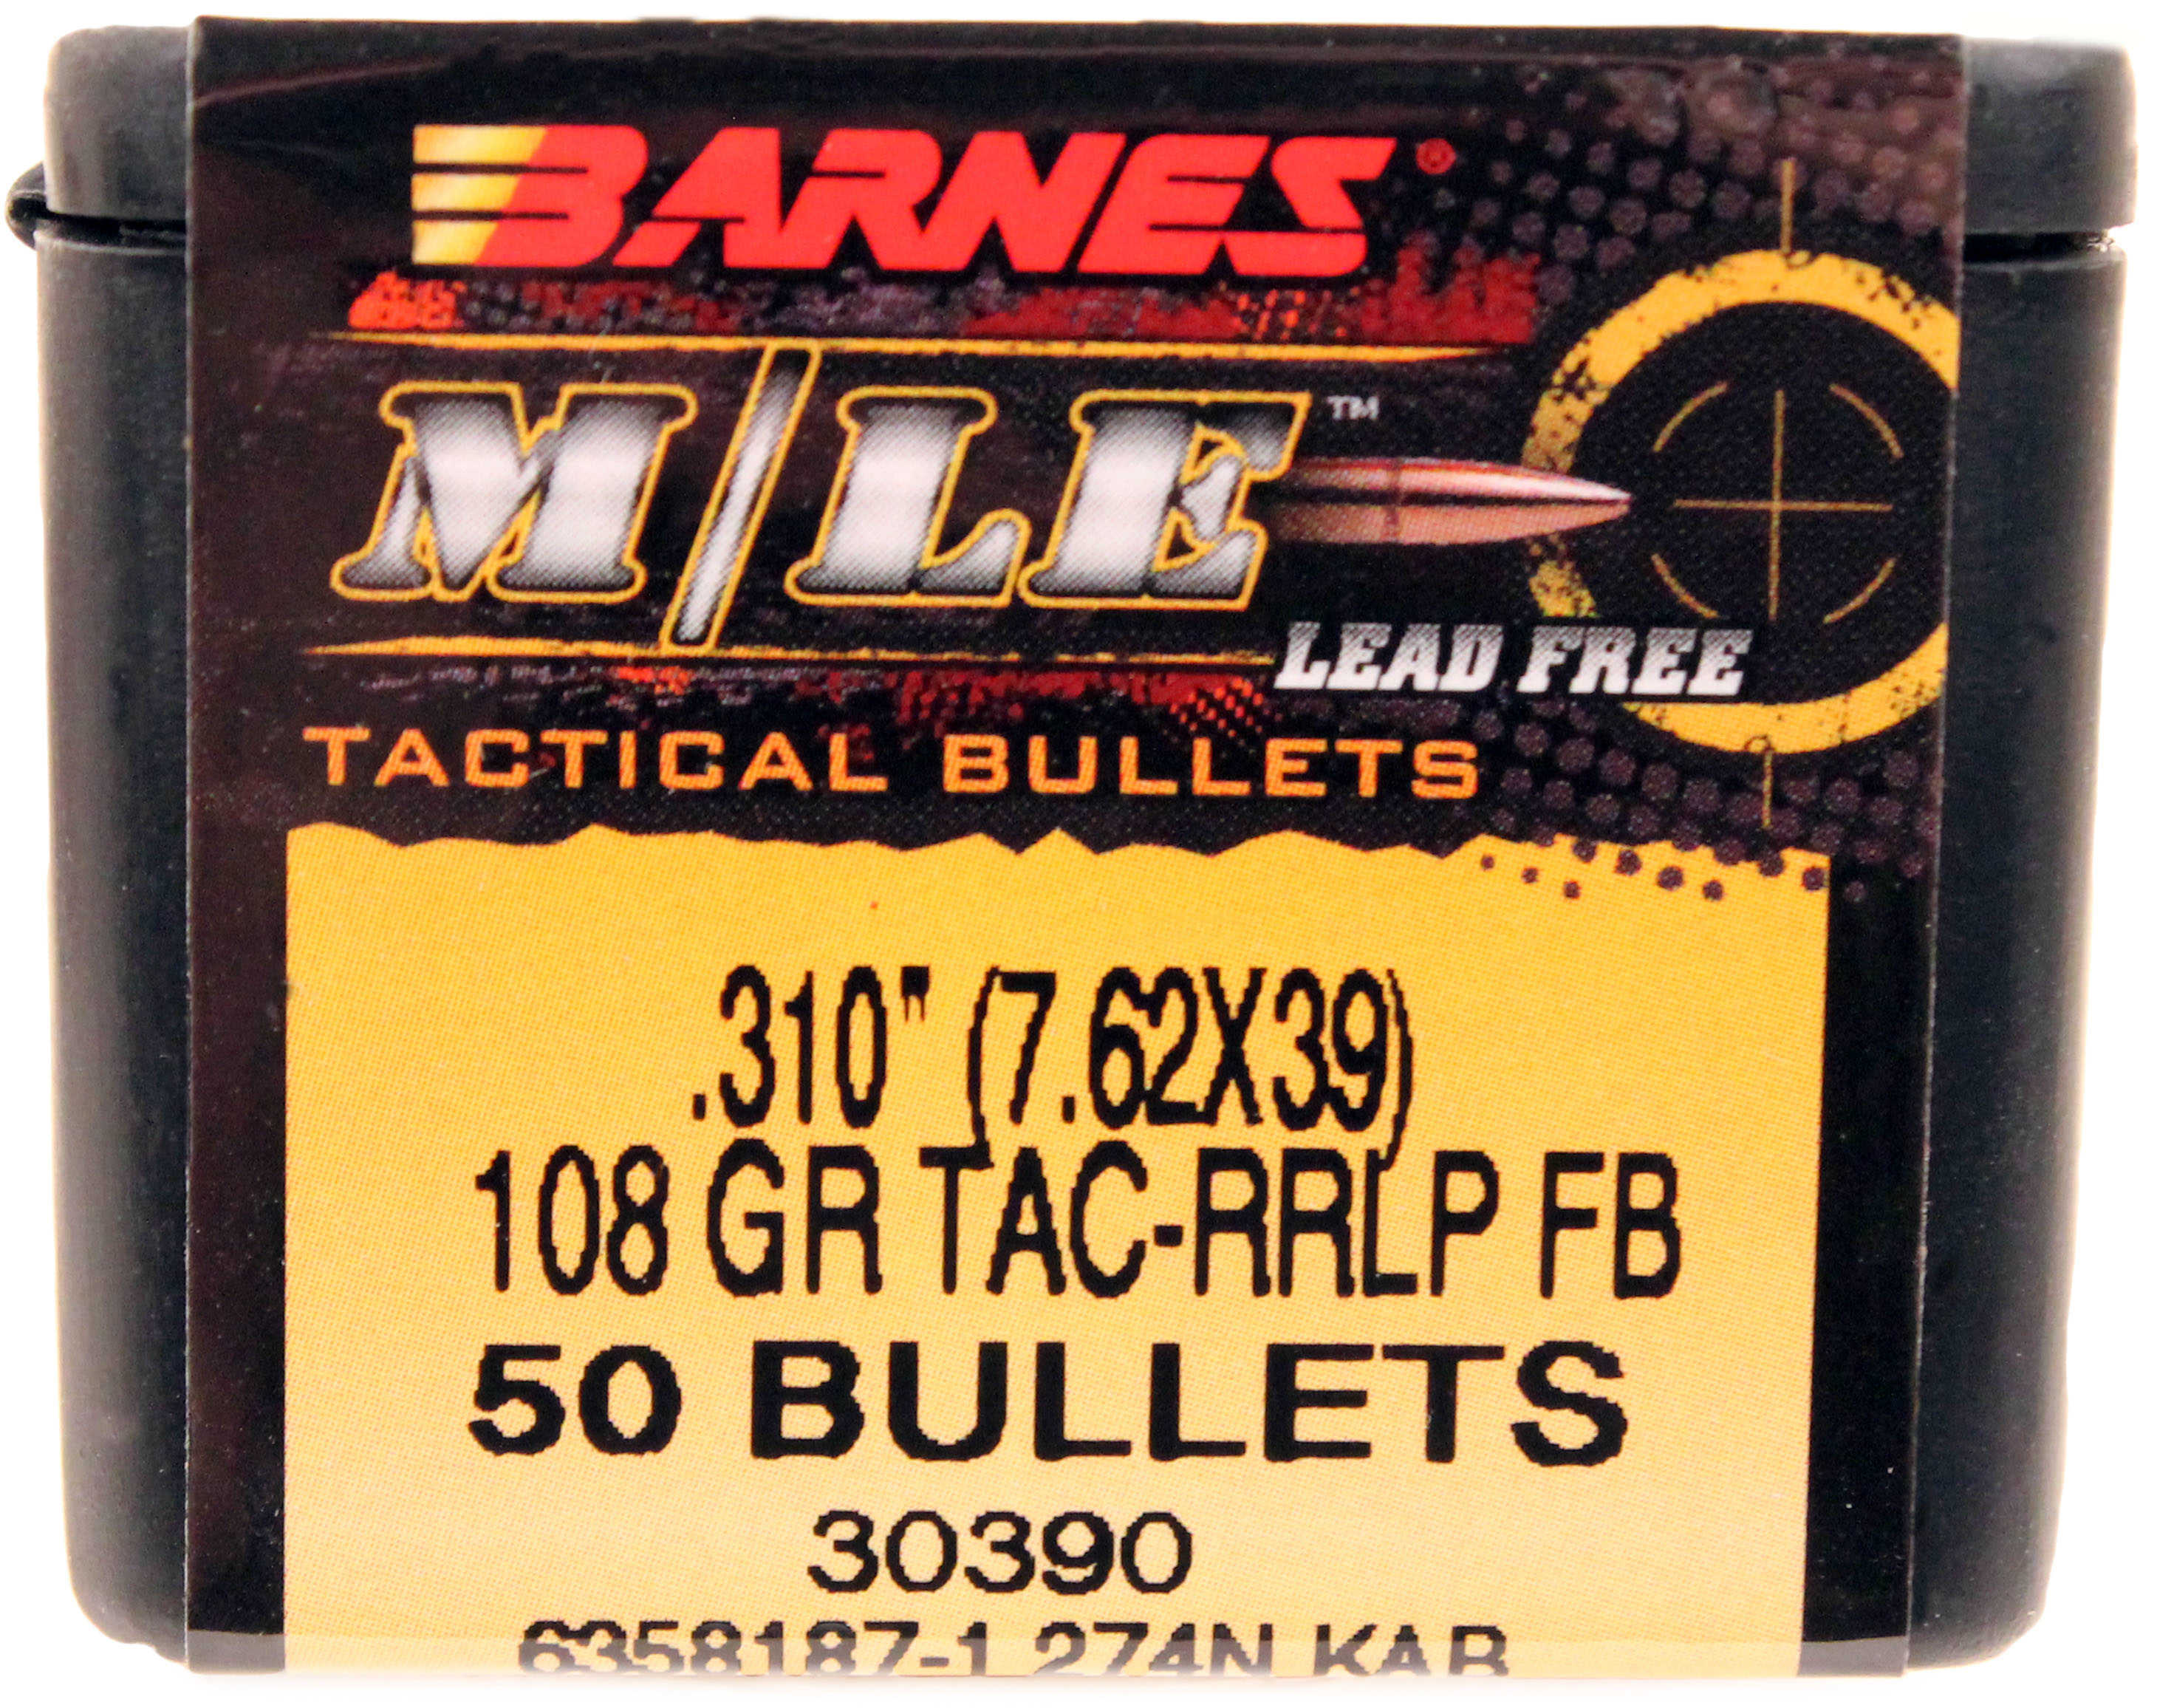 Barnes 31010 Tactical 7.62mmX39mm 108 Grains 50 Per Box